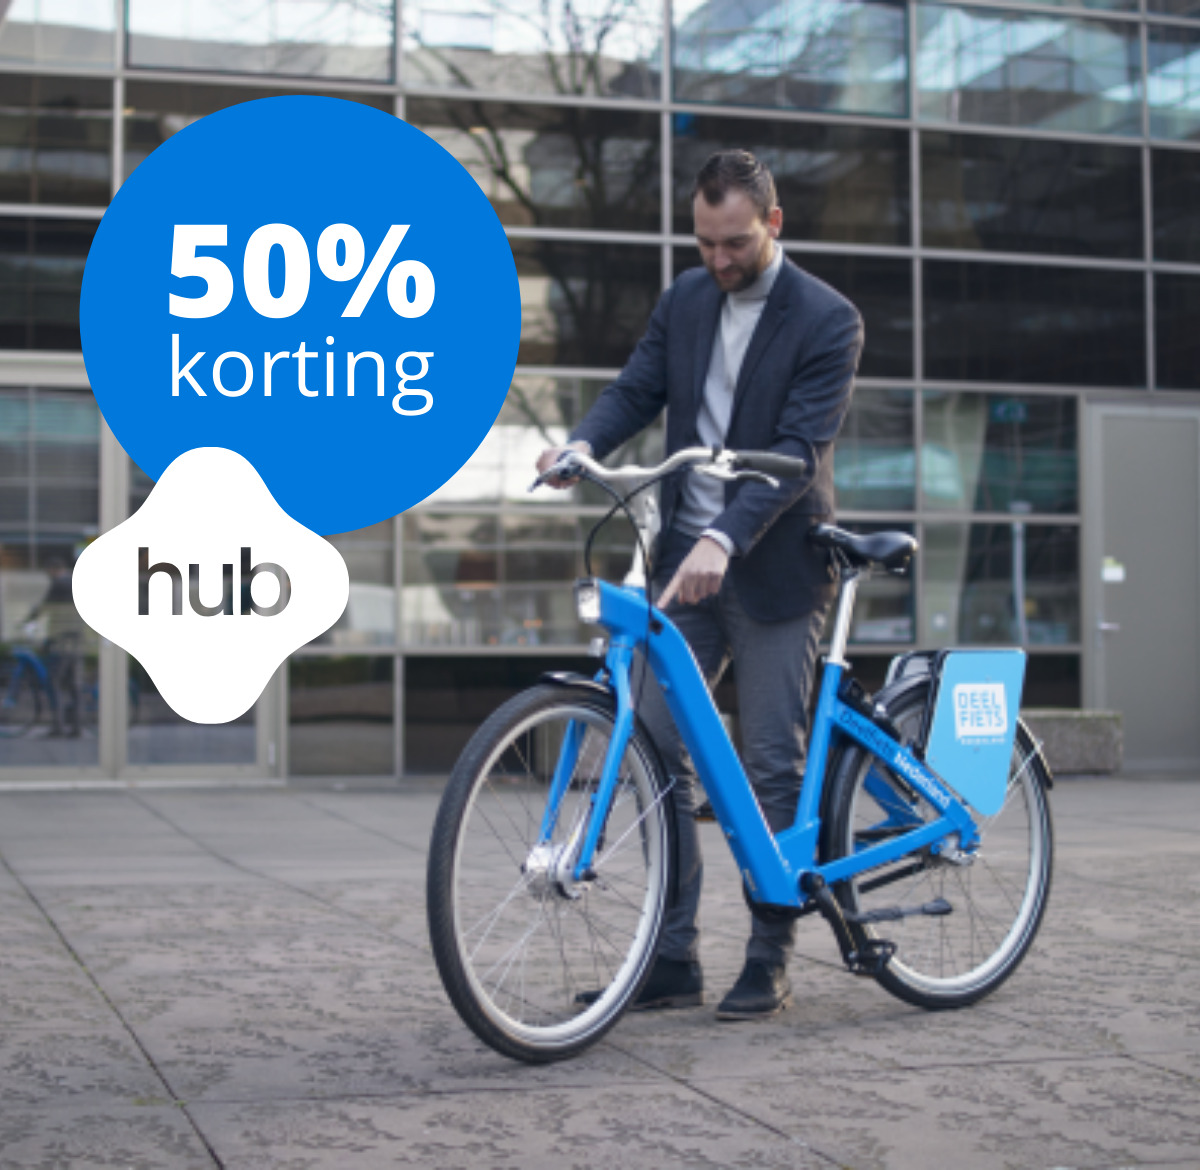 ontploffing De vreemdeling stil Met 50% korting op de hubfiets vanaf hub P+R Hoogkerk - Reisviahub.nl